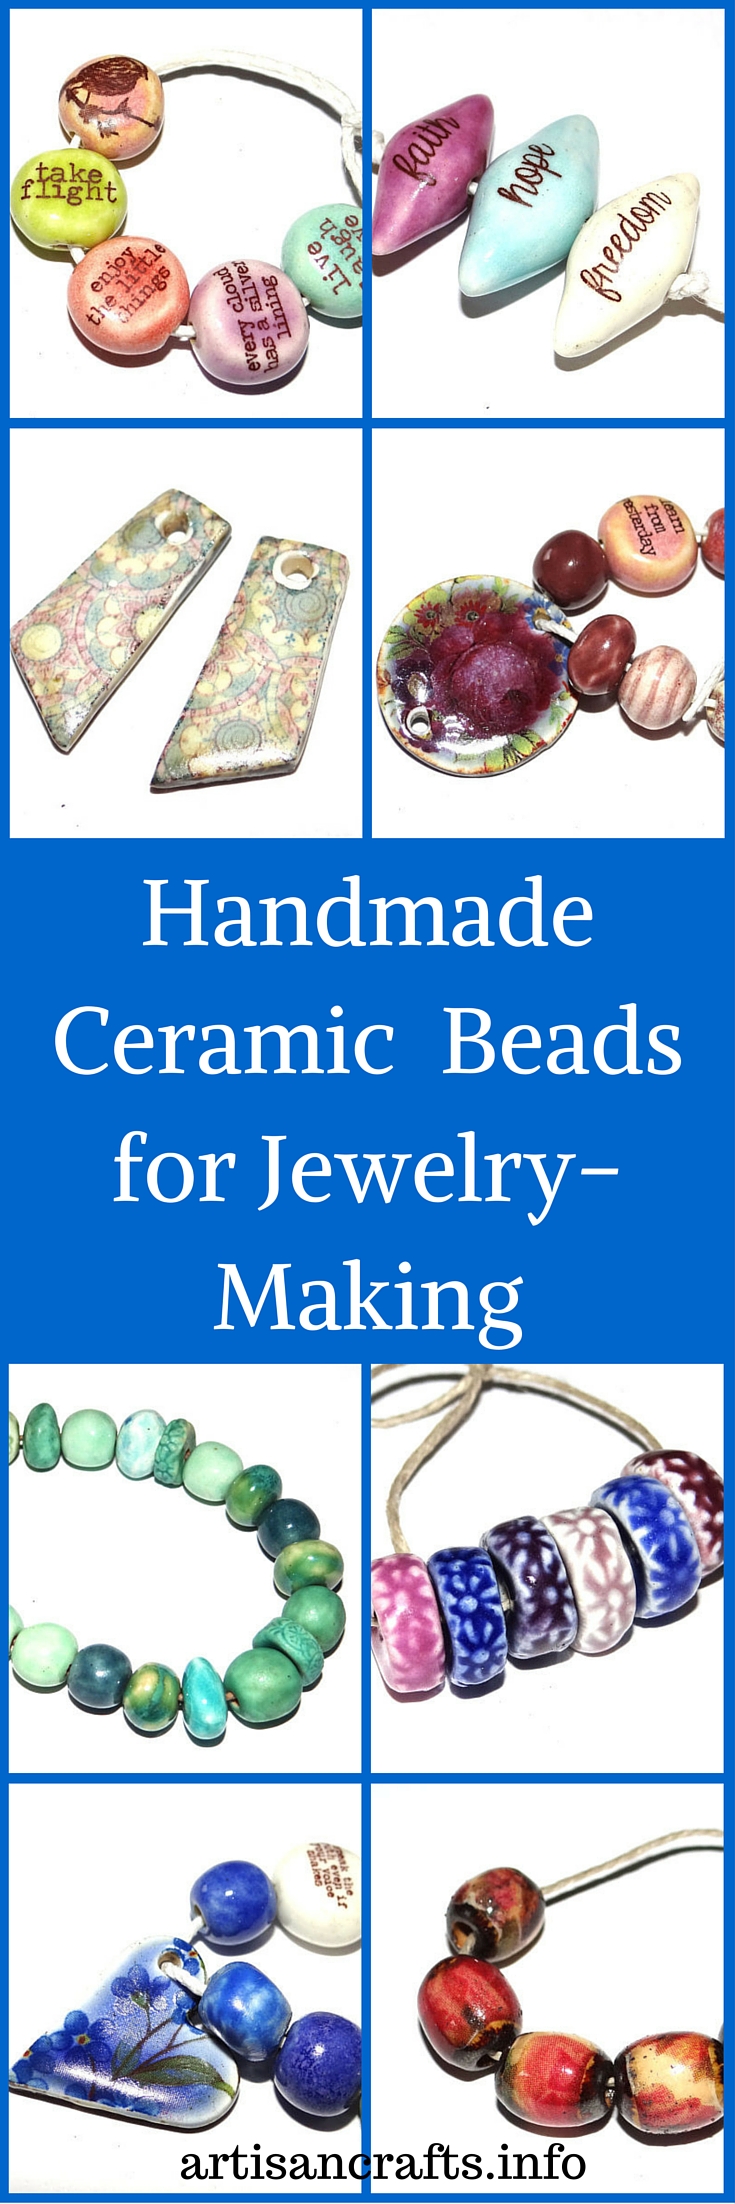 Handmade Ceramic Beads for Jewelry-Making